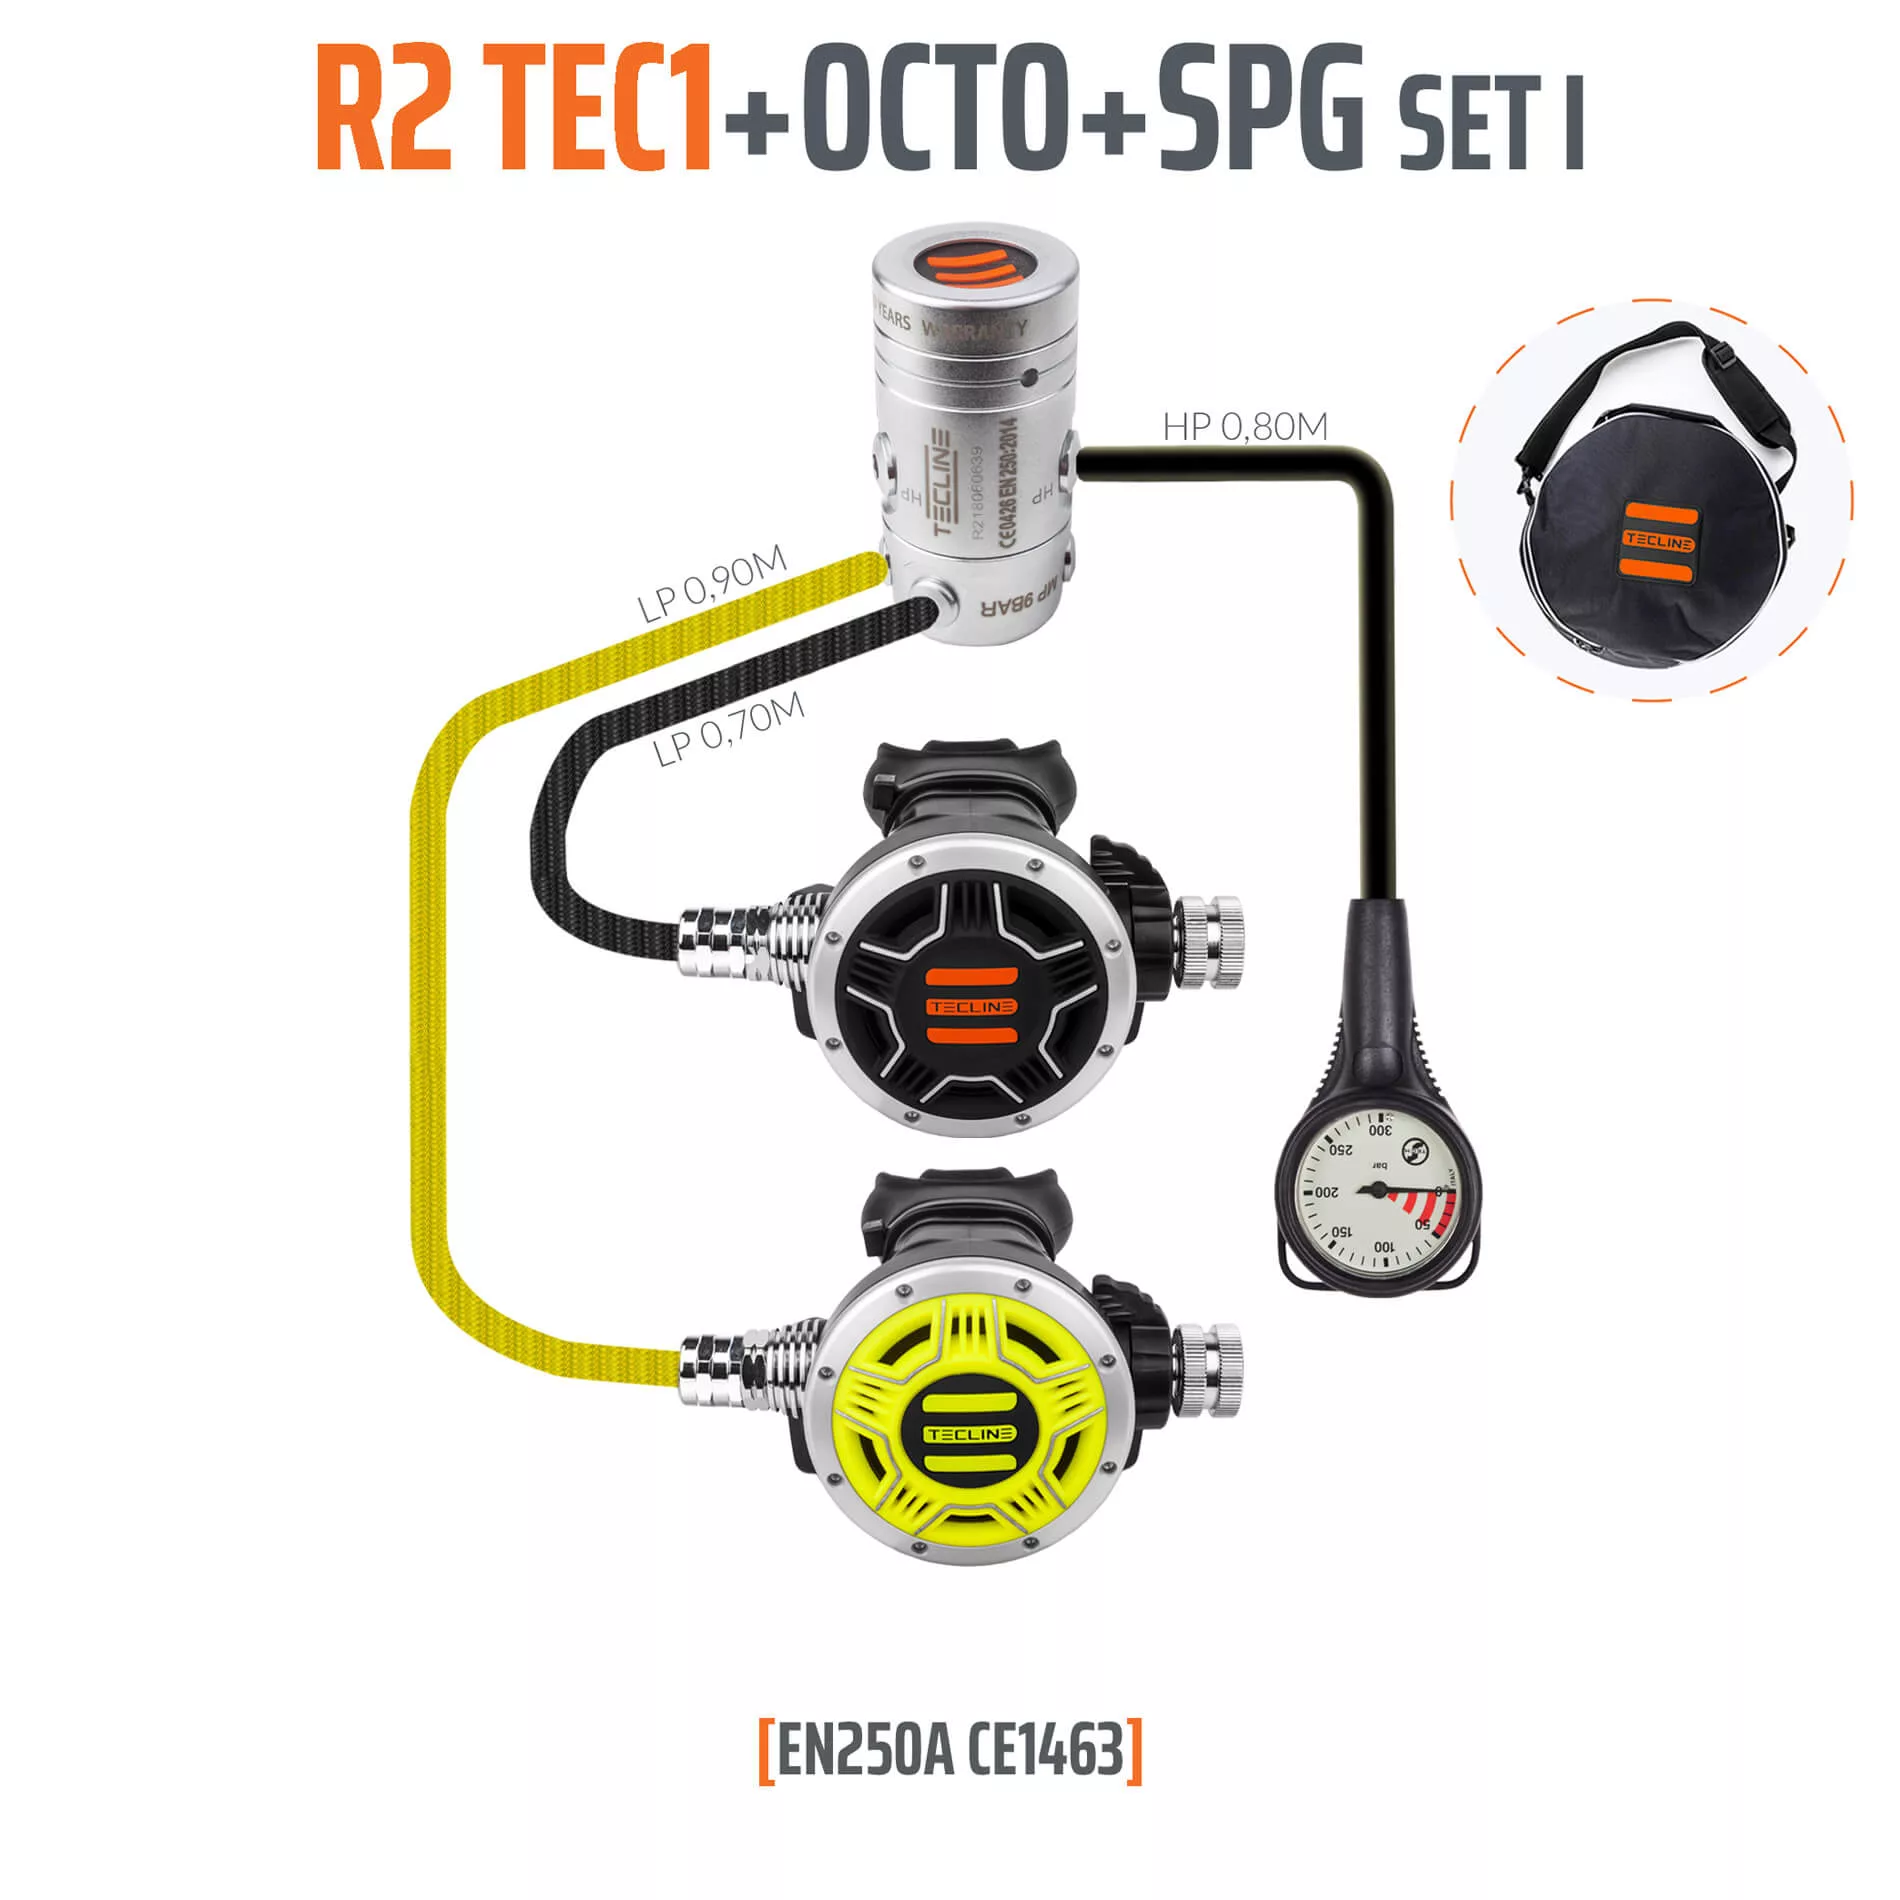 Nemo Regulator R2 Tec1 Set I With Octo And Spg - En250a